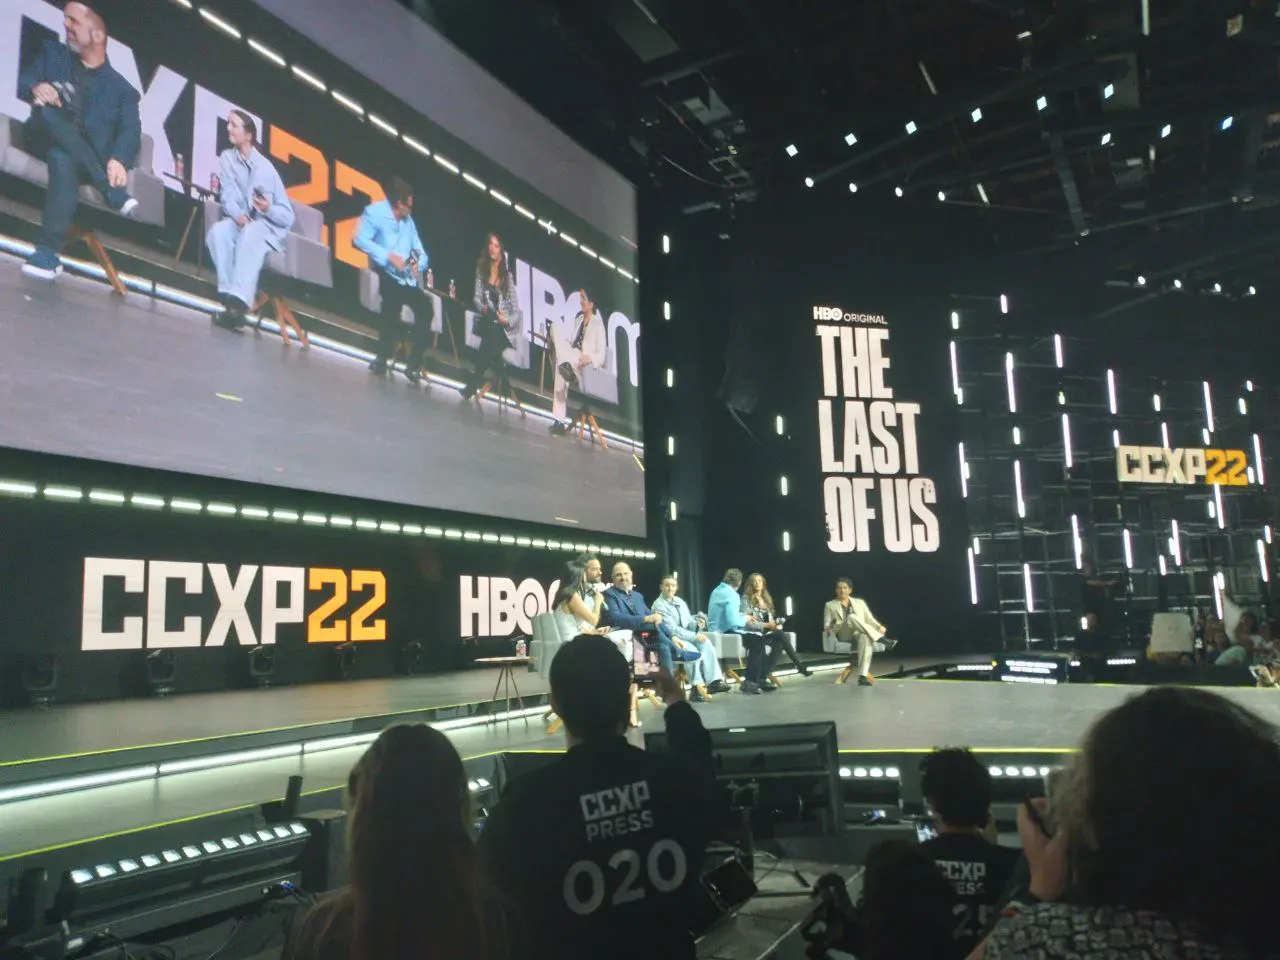 The Last of Us ganha novo trailer durante CCXP22